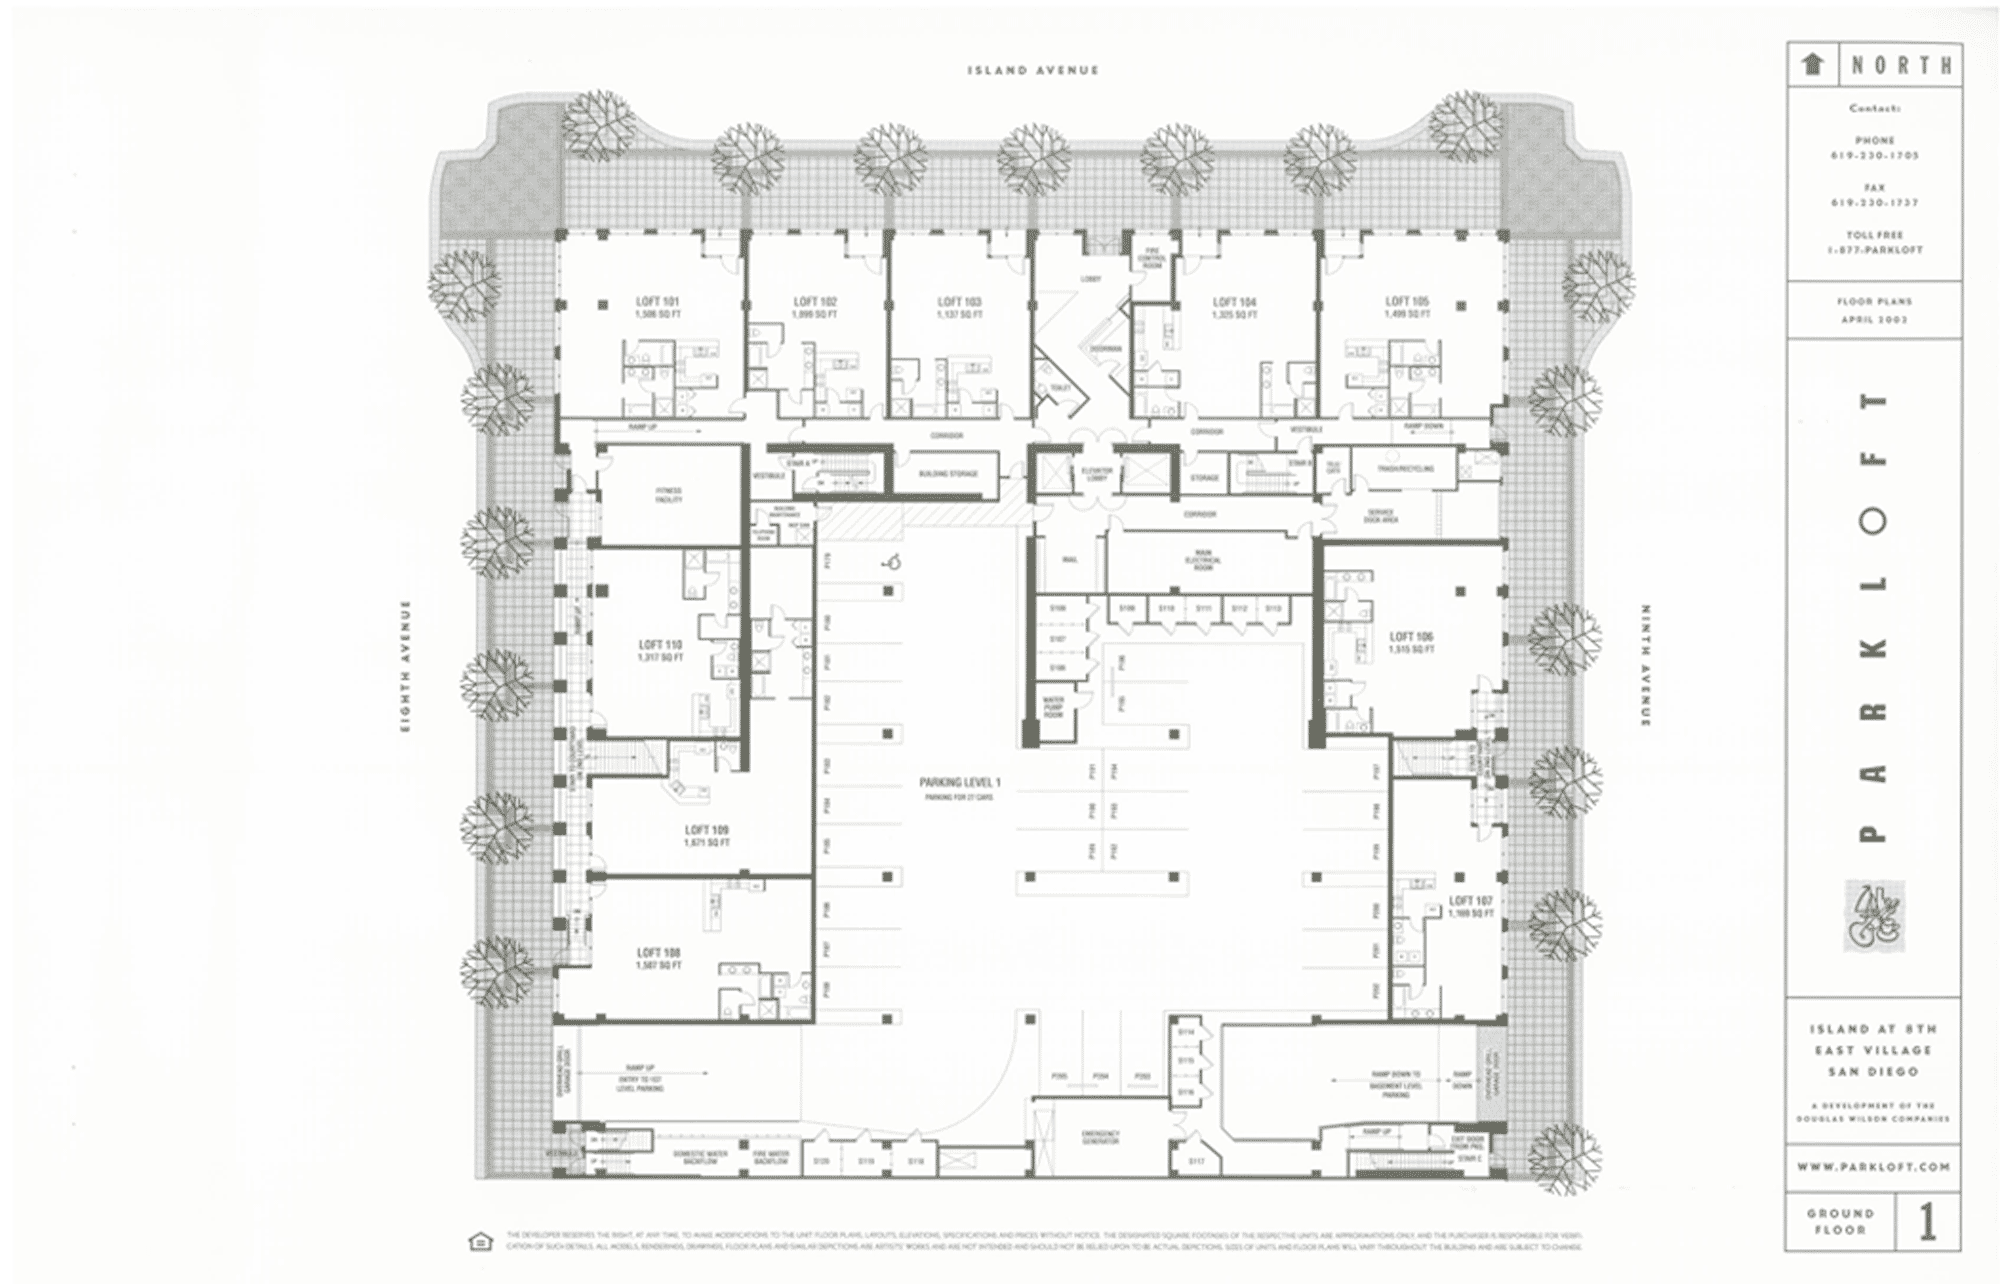 Parkloft Floor Plan 1st Floor